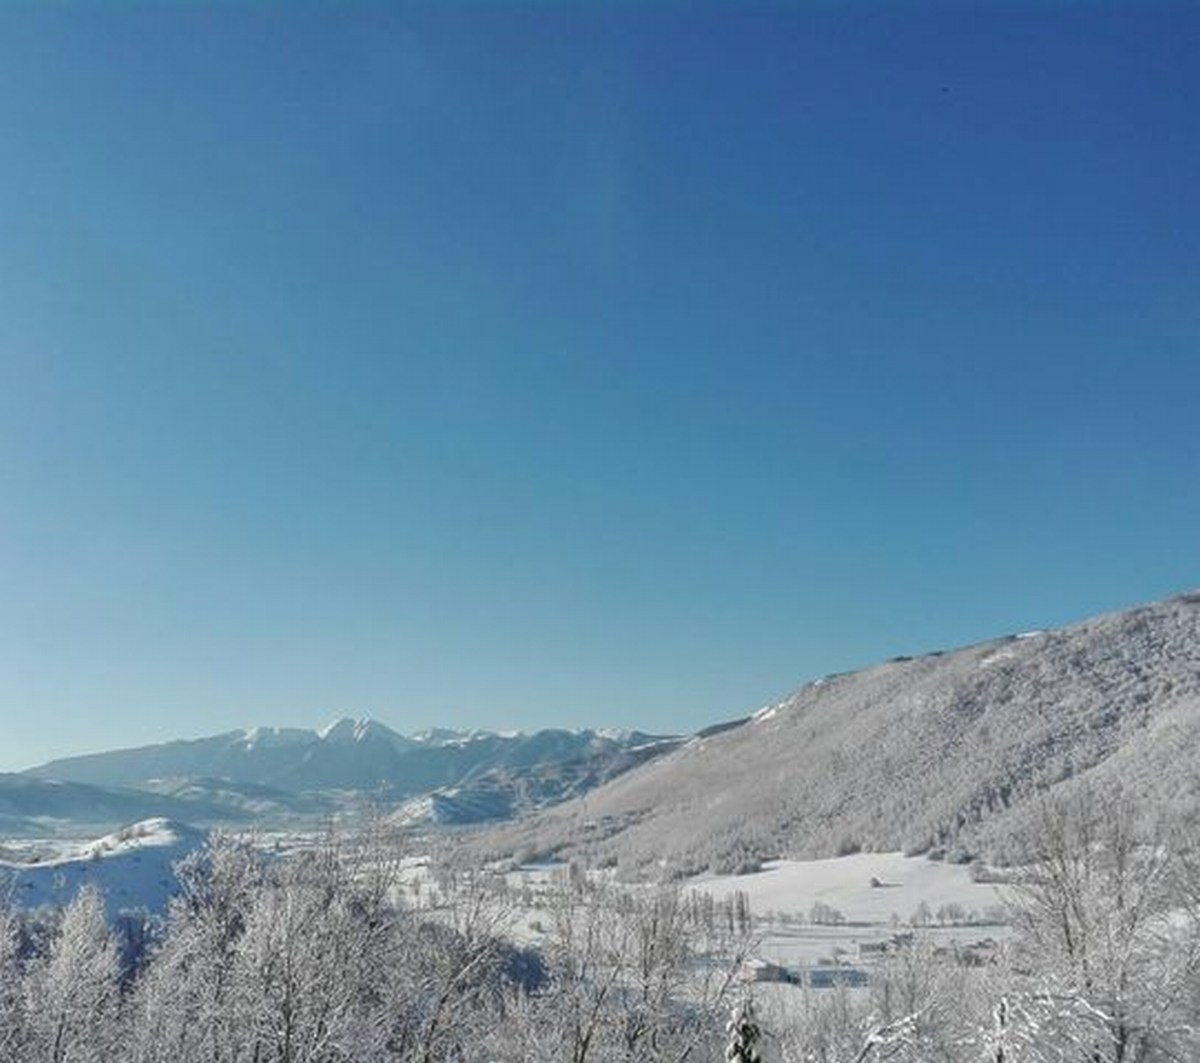 Foto Melissa Rosati Pian di Chiavano (Cascia) neve - gennaio 2021 (11)